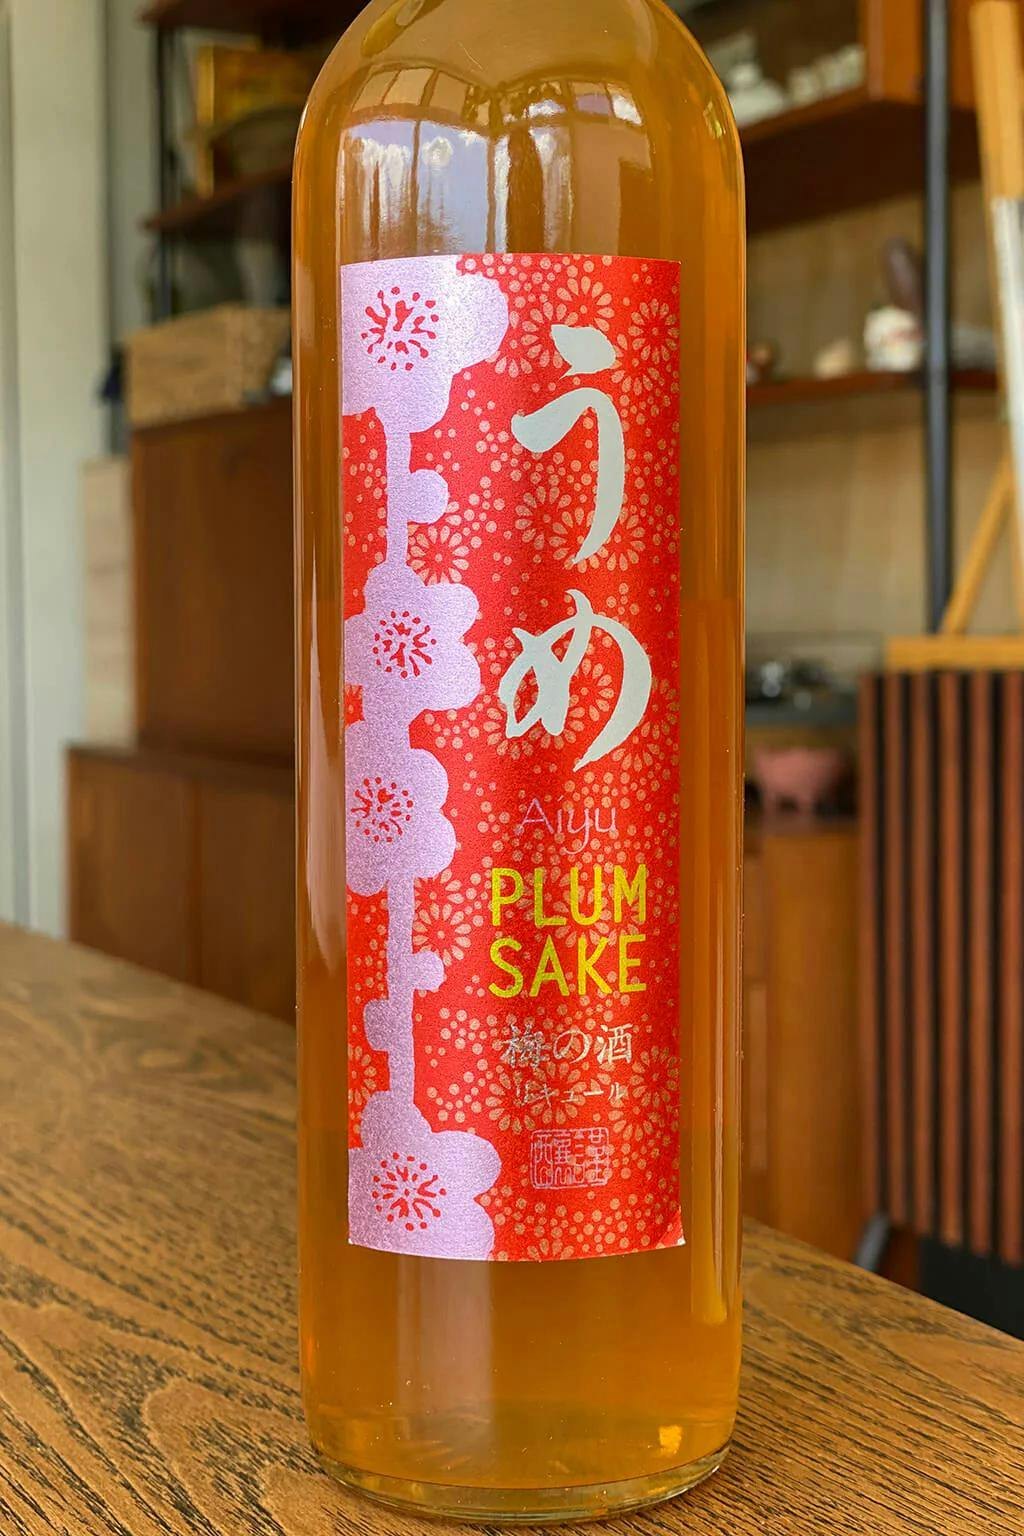 Aiyu plum sake bottle